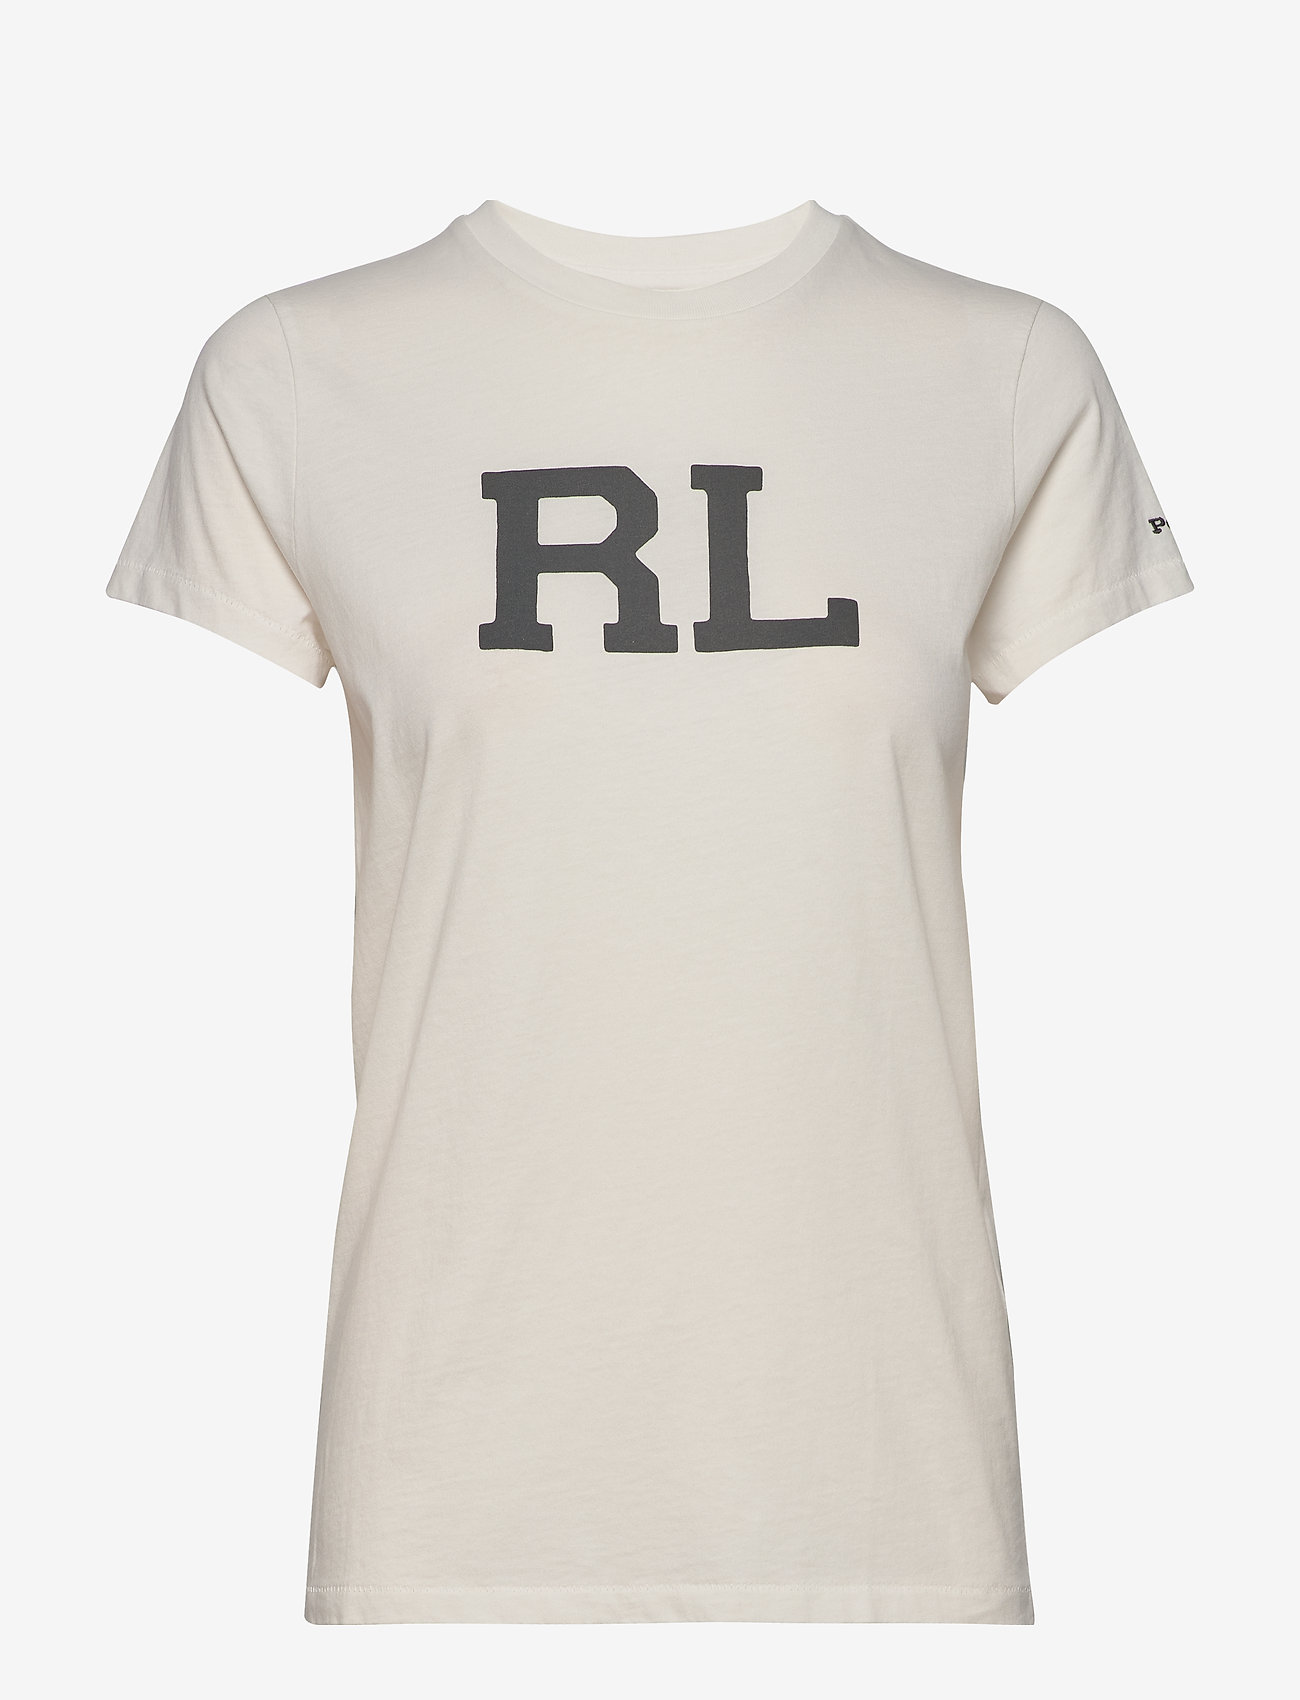 rl shirt